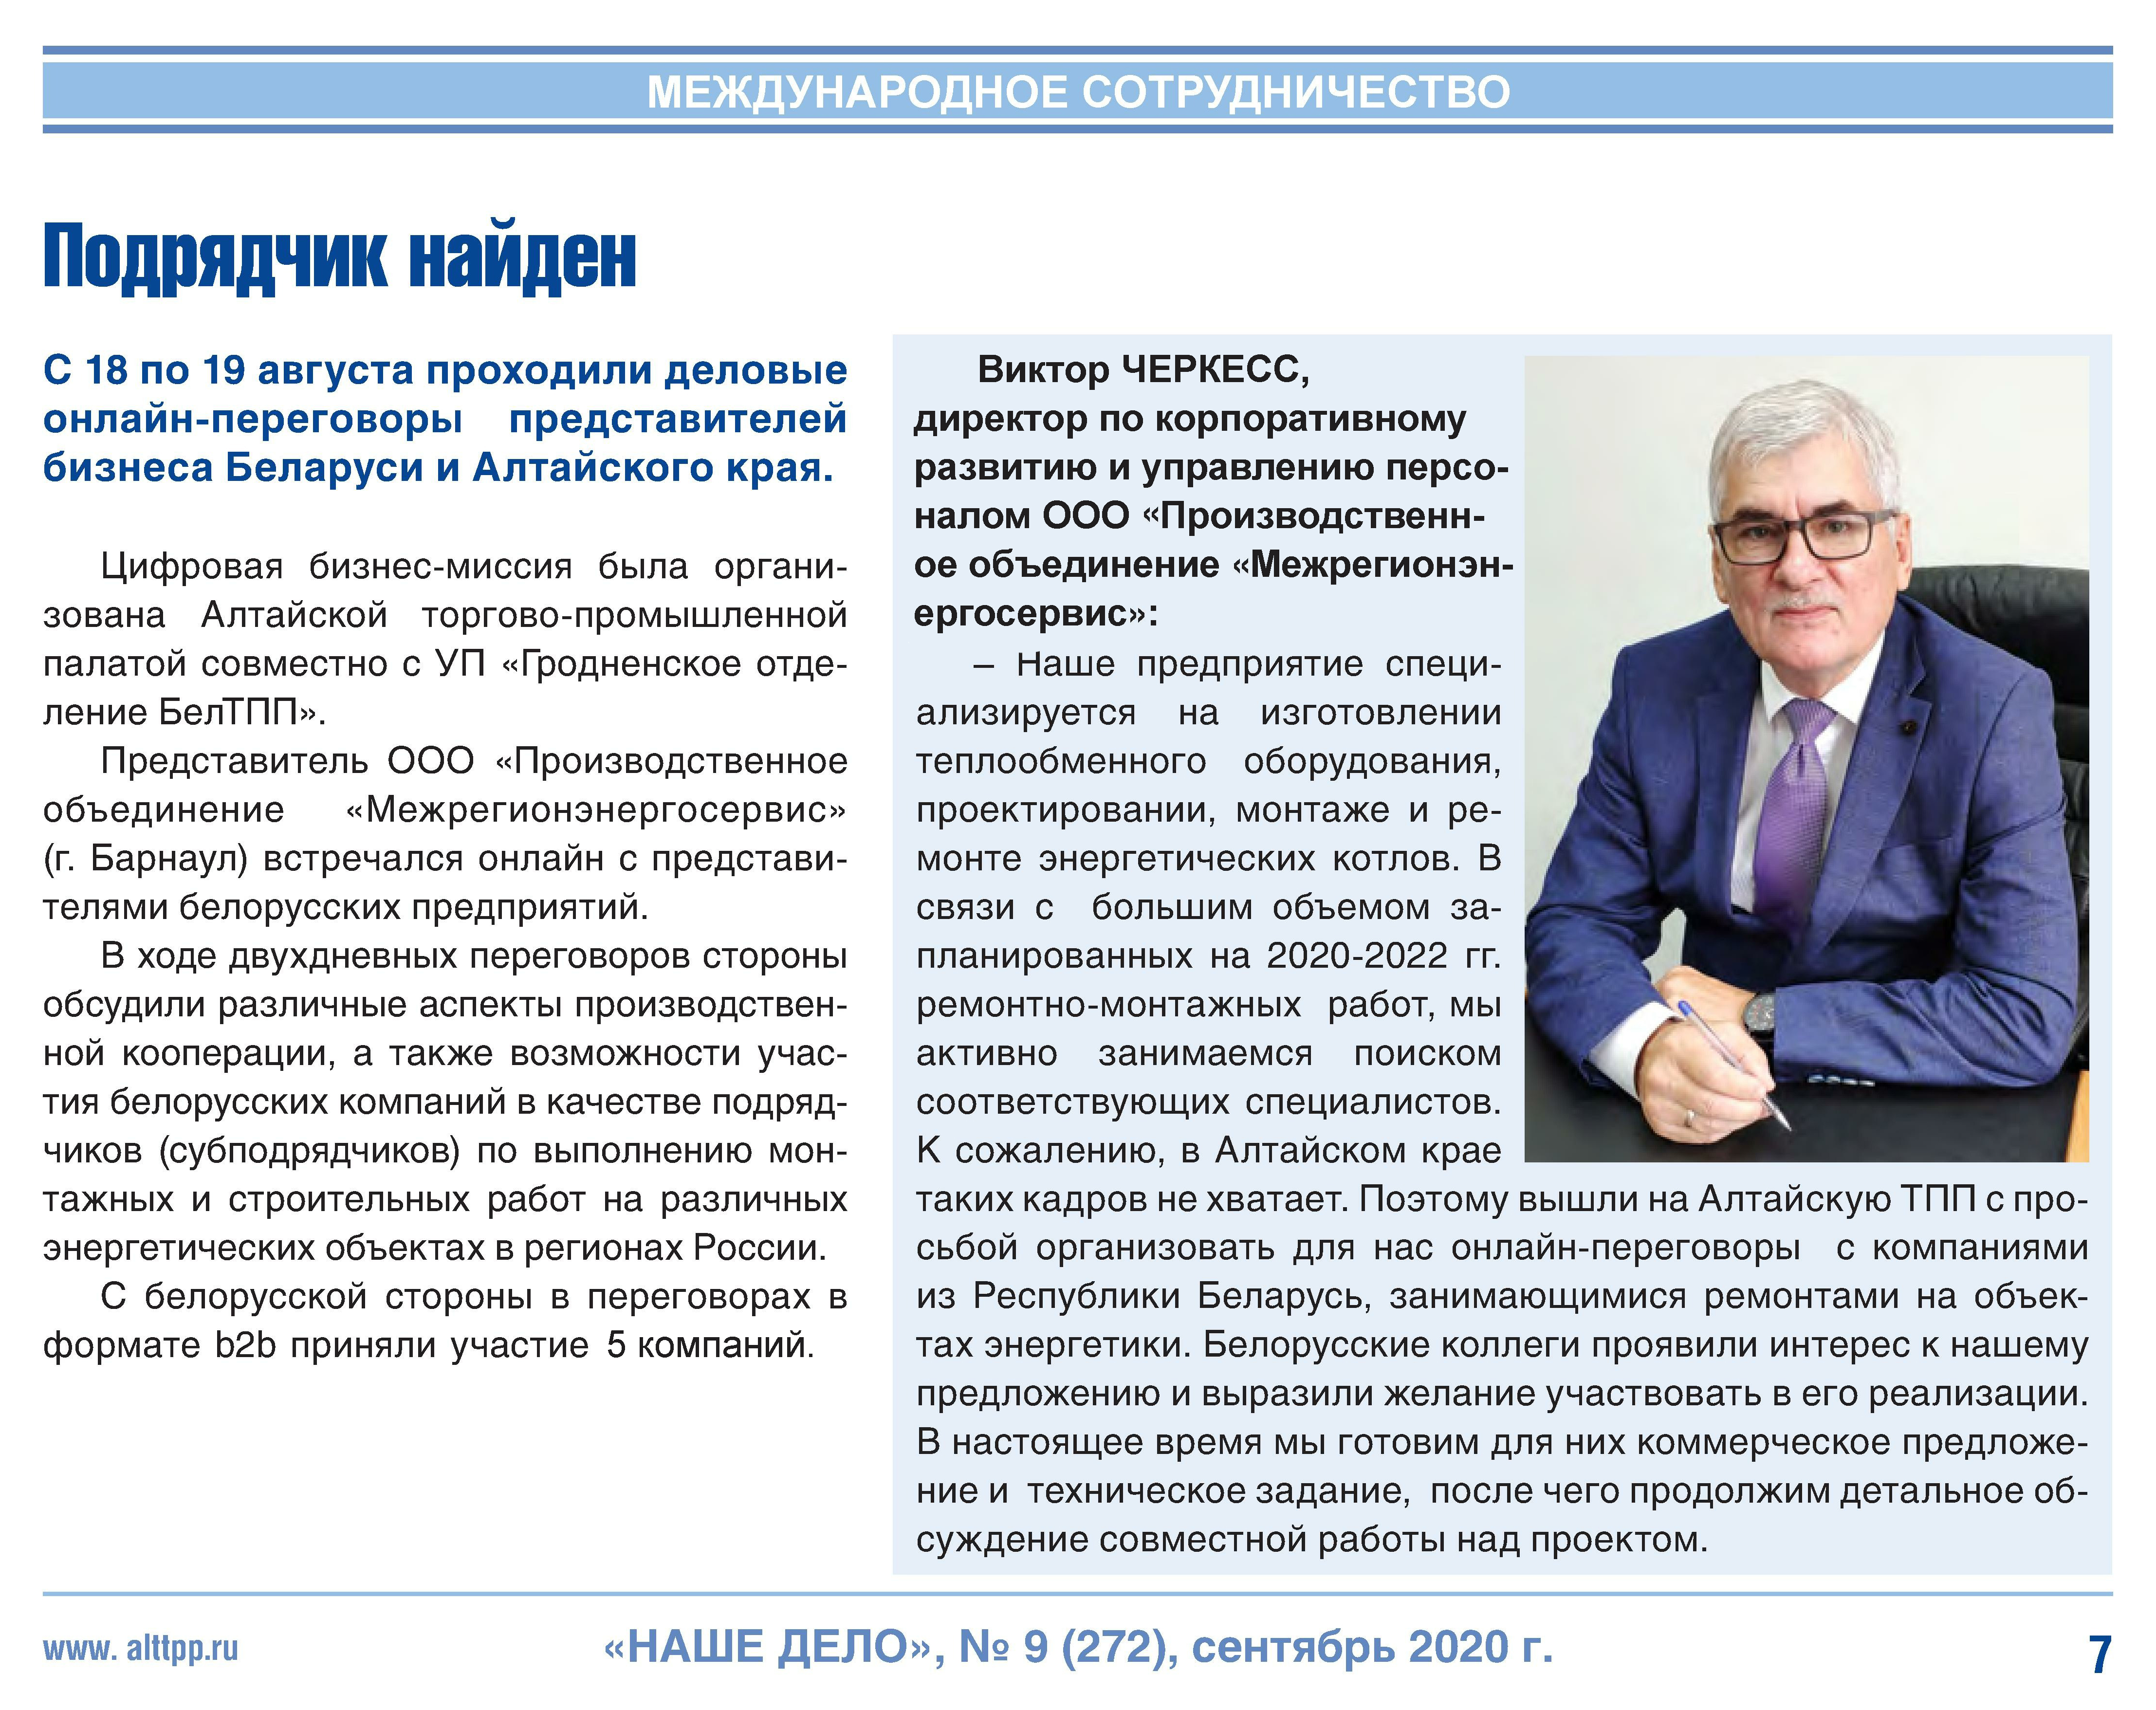 Деловые переговоры с представителями бизнеса Республики Белоруссии